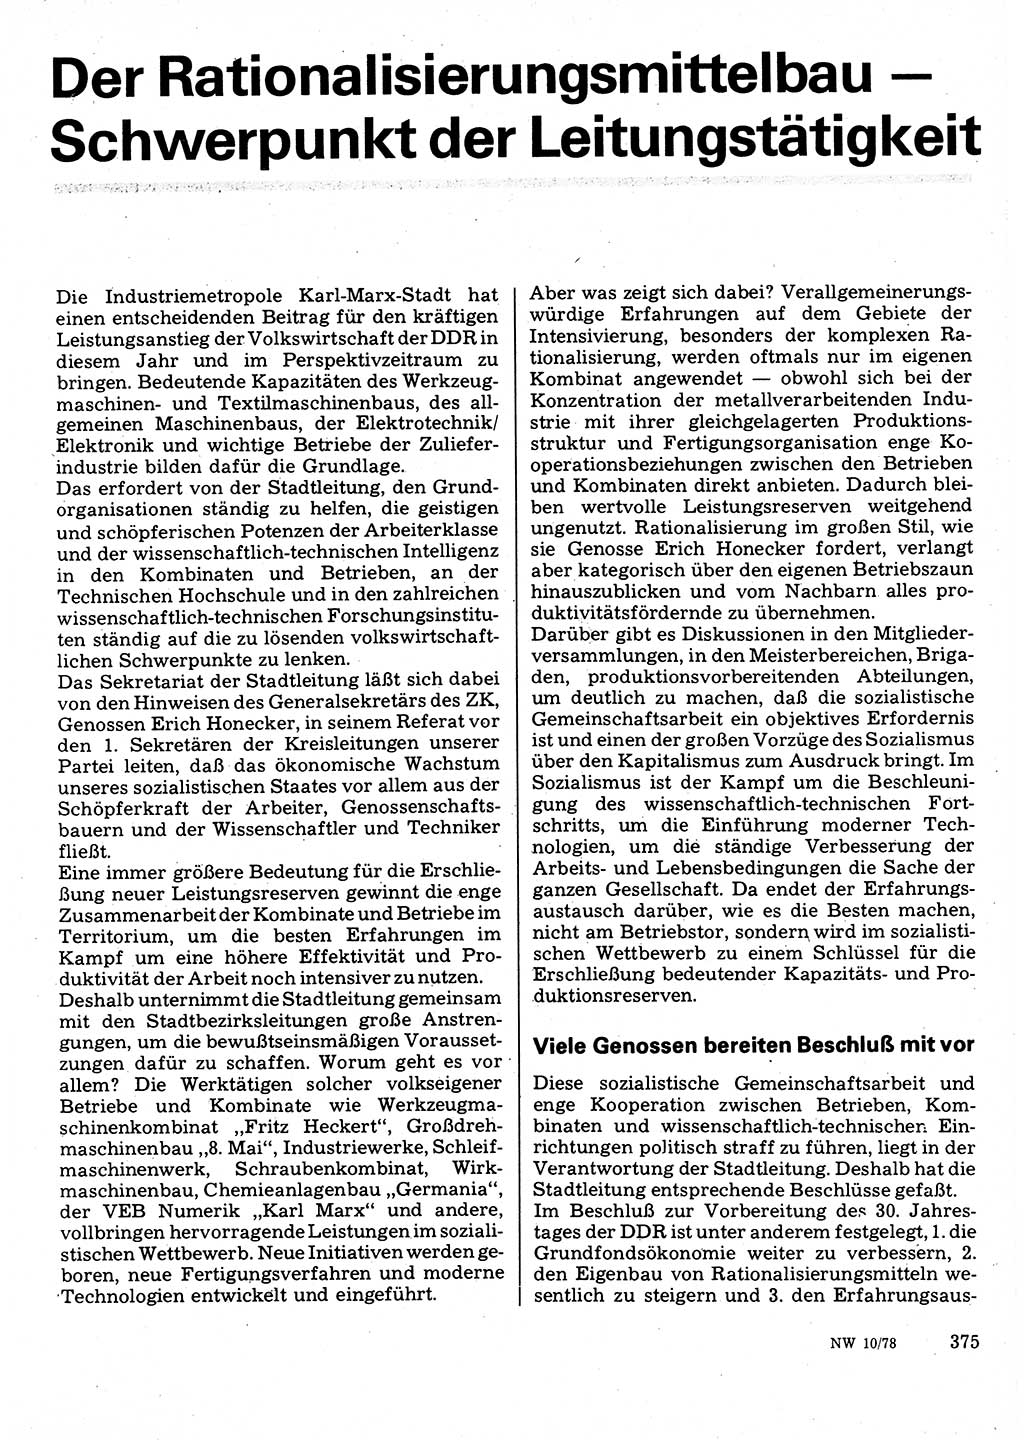 Neuer Weg (NW), Organ des Zentralkomitees (ZK) der SED (Sozialistische Einheitspartei Deutschlands) für Fragen des Parteilebens, 33. Jahrgang [Deutsche Demokratische Republik (DDR)] 1978, Seite 375 (NW ZK SED DDR 1978, S. 375)